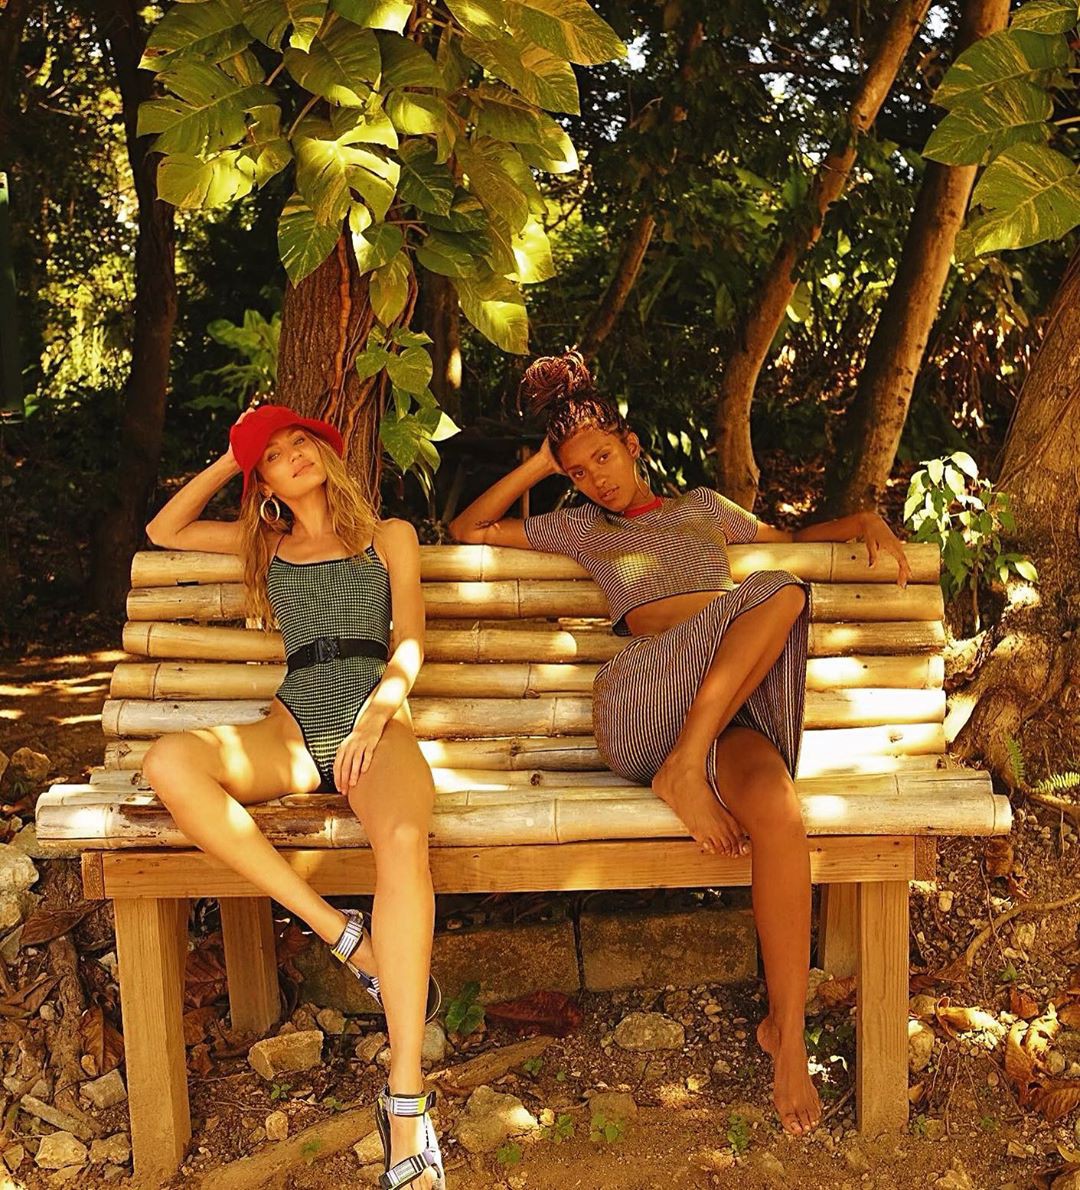 Las fotos más recientes de Candice Swanepoel en Instagram: candice swanepoel,  Modelos calientes de Instagram,  modelos de instagram,  fotos de instagram,  mejores modelos de Instagram,  chicas más calientes en Instagram  